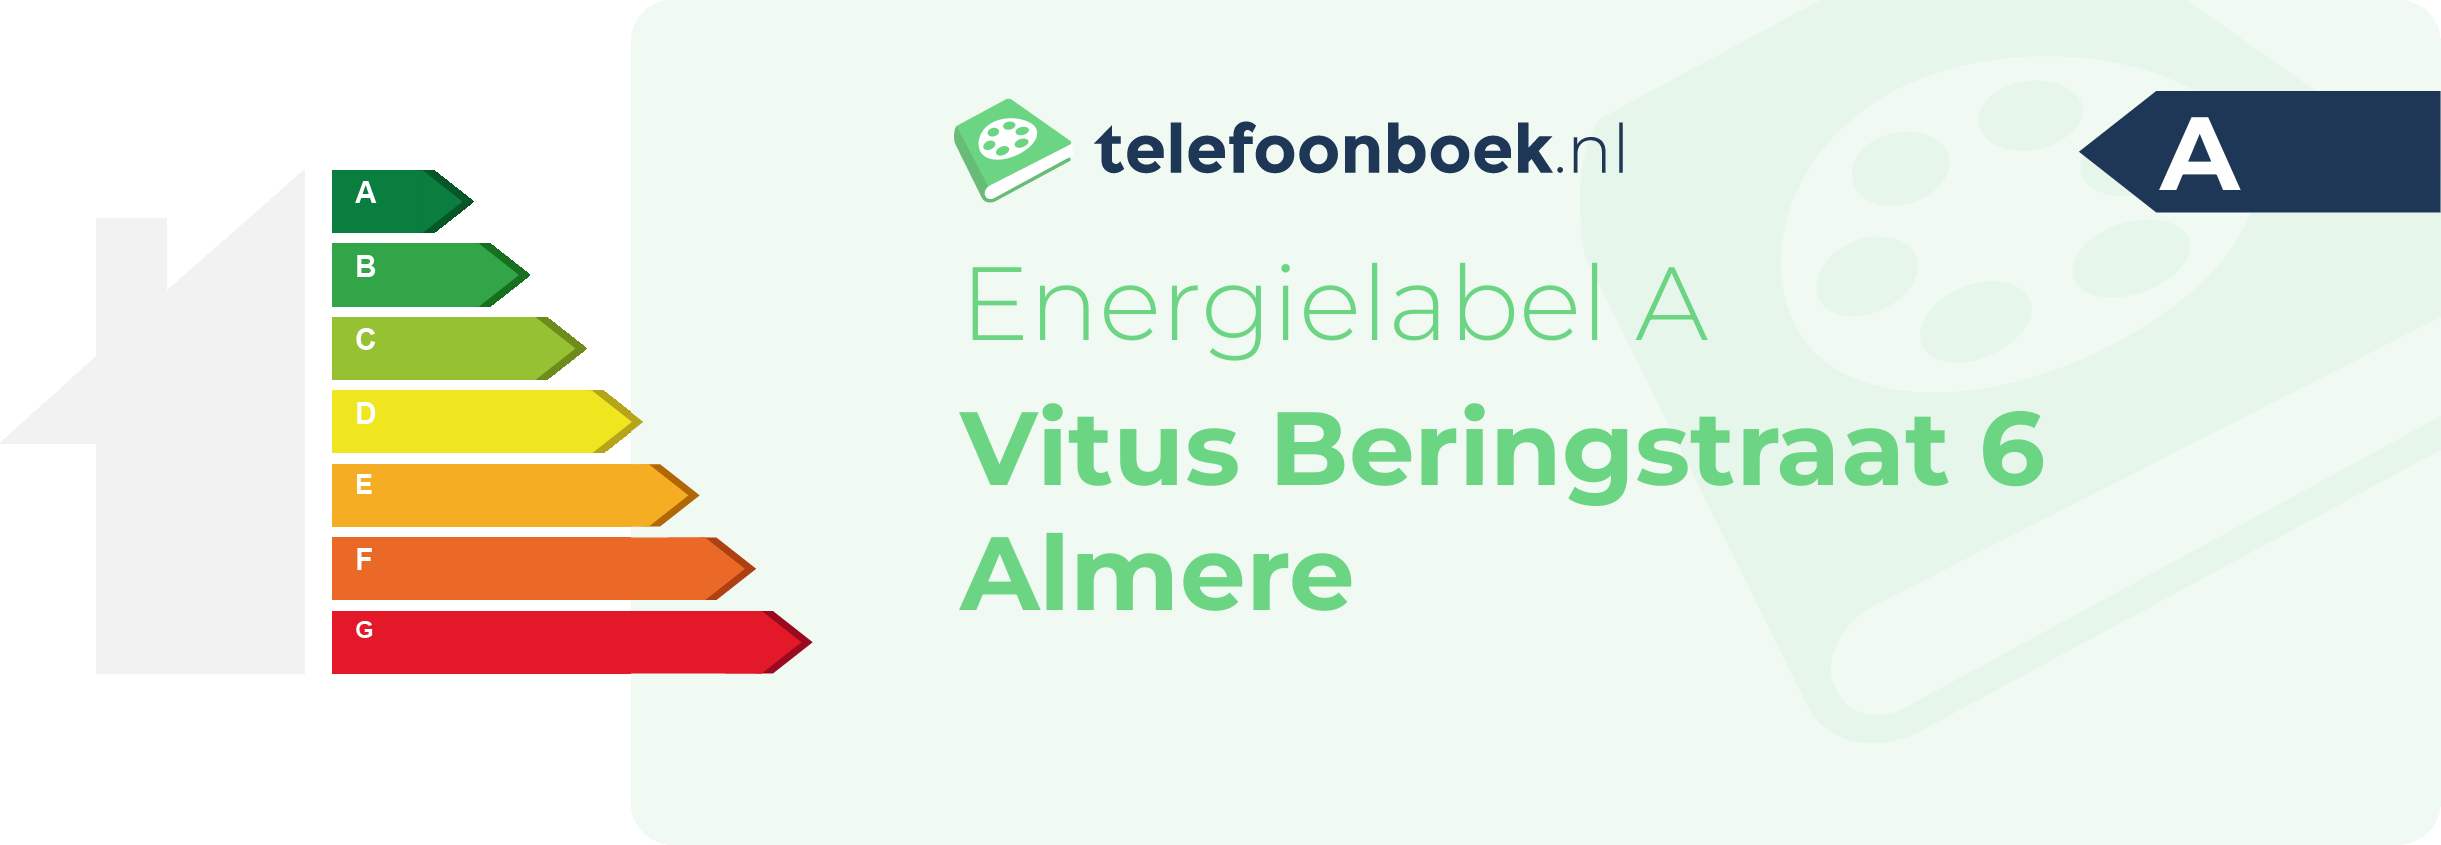 Energielabel Vitus Beringstraat 6 Almere